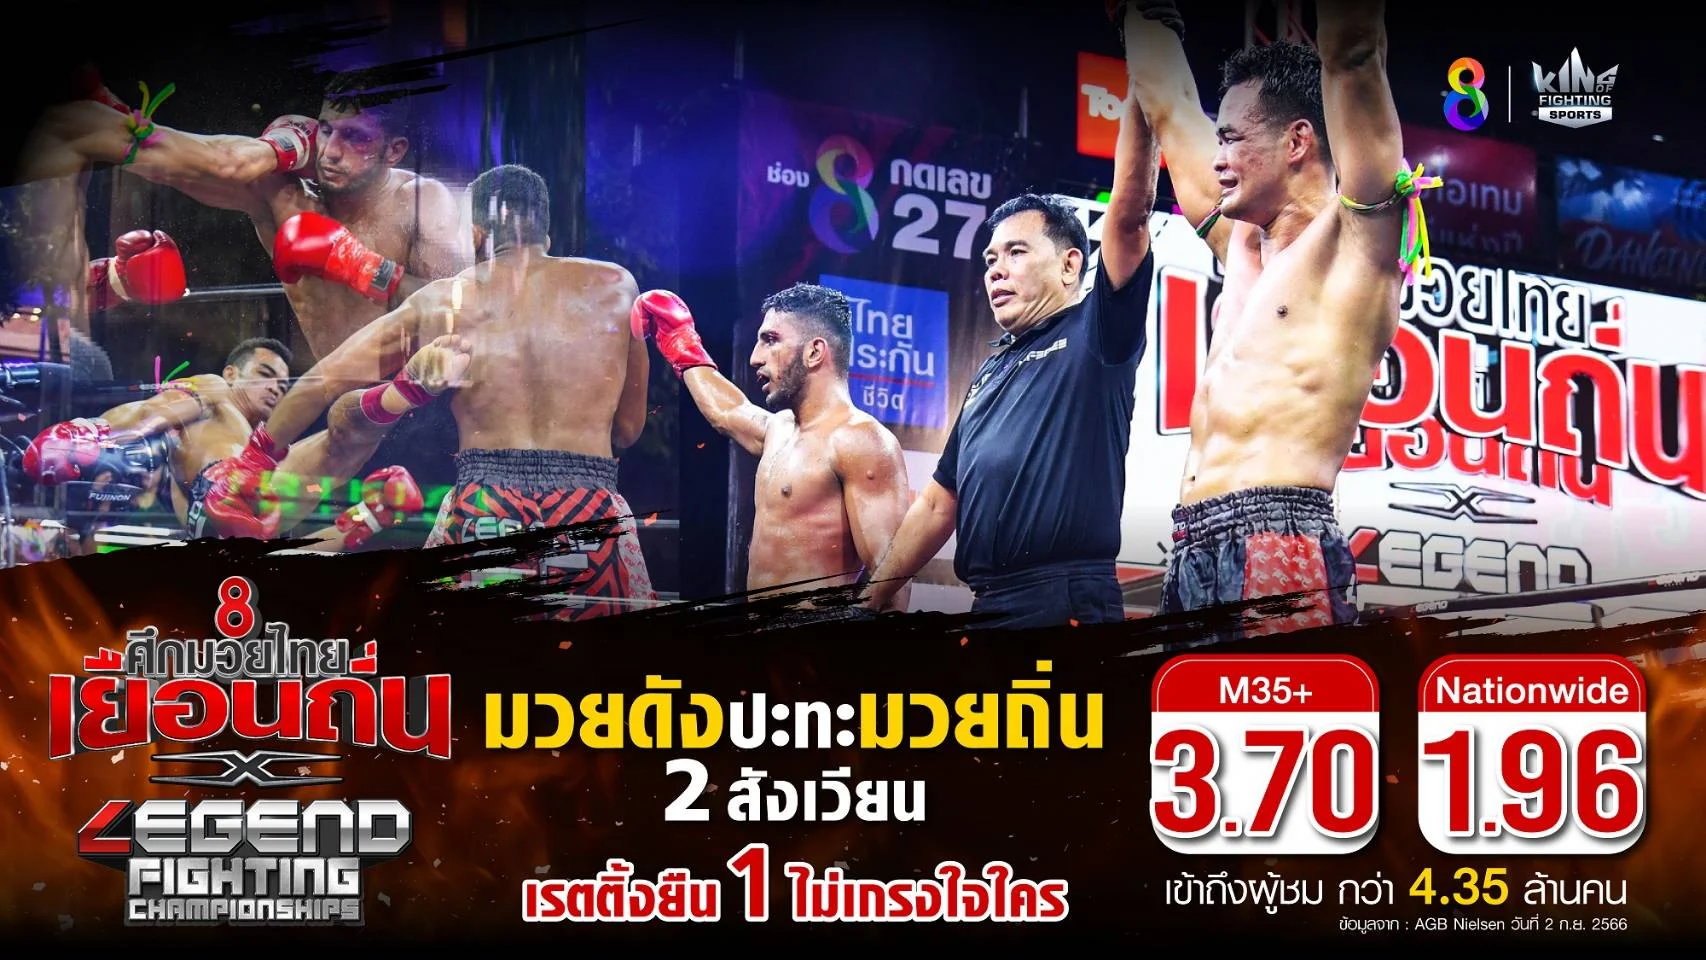 ศึกใหญ่! ช่อง 8 ศึกมวยไทยเยือนถิ่น จับมือ Legend Fighting Championships